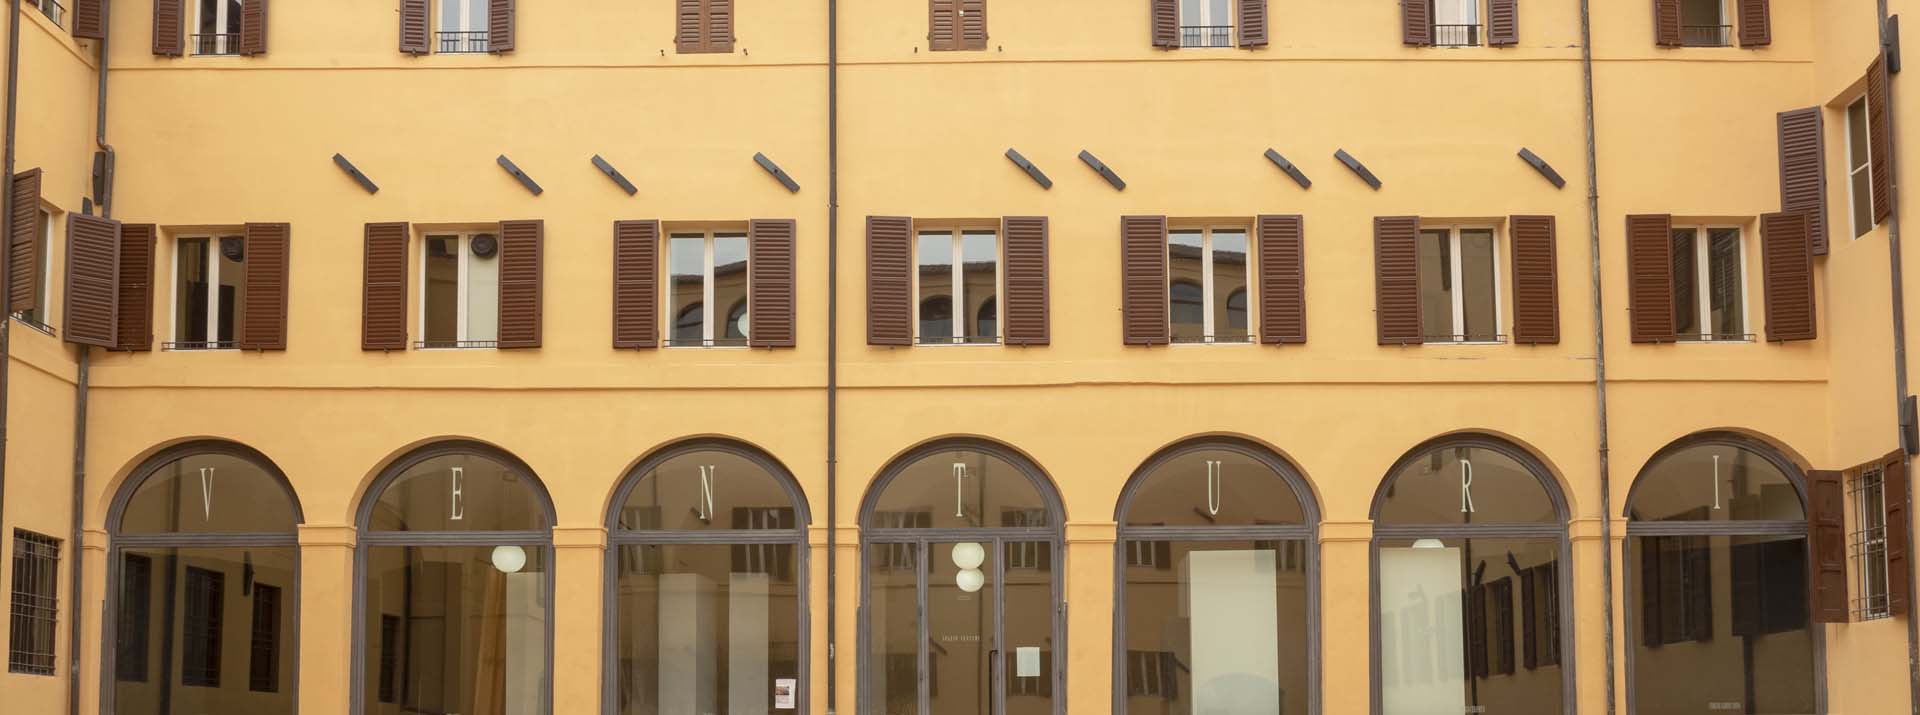 Riqualificazione dell'istituto d'arte Venturi di Modena a cura di Boero